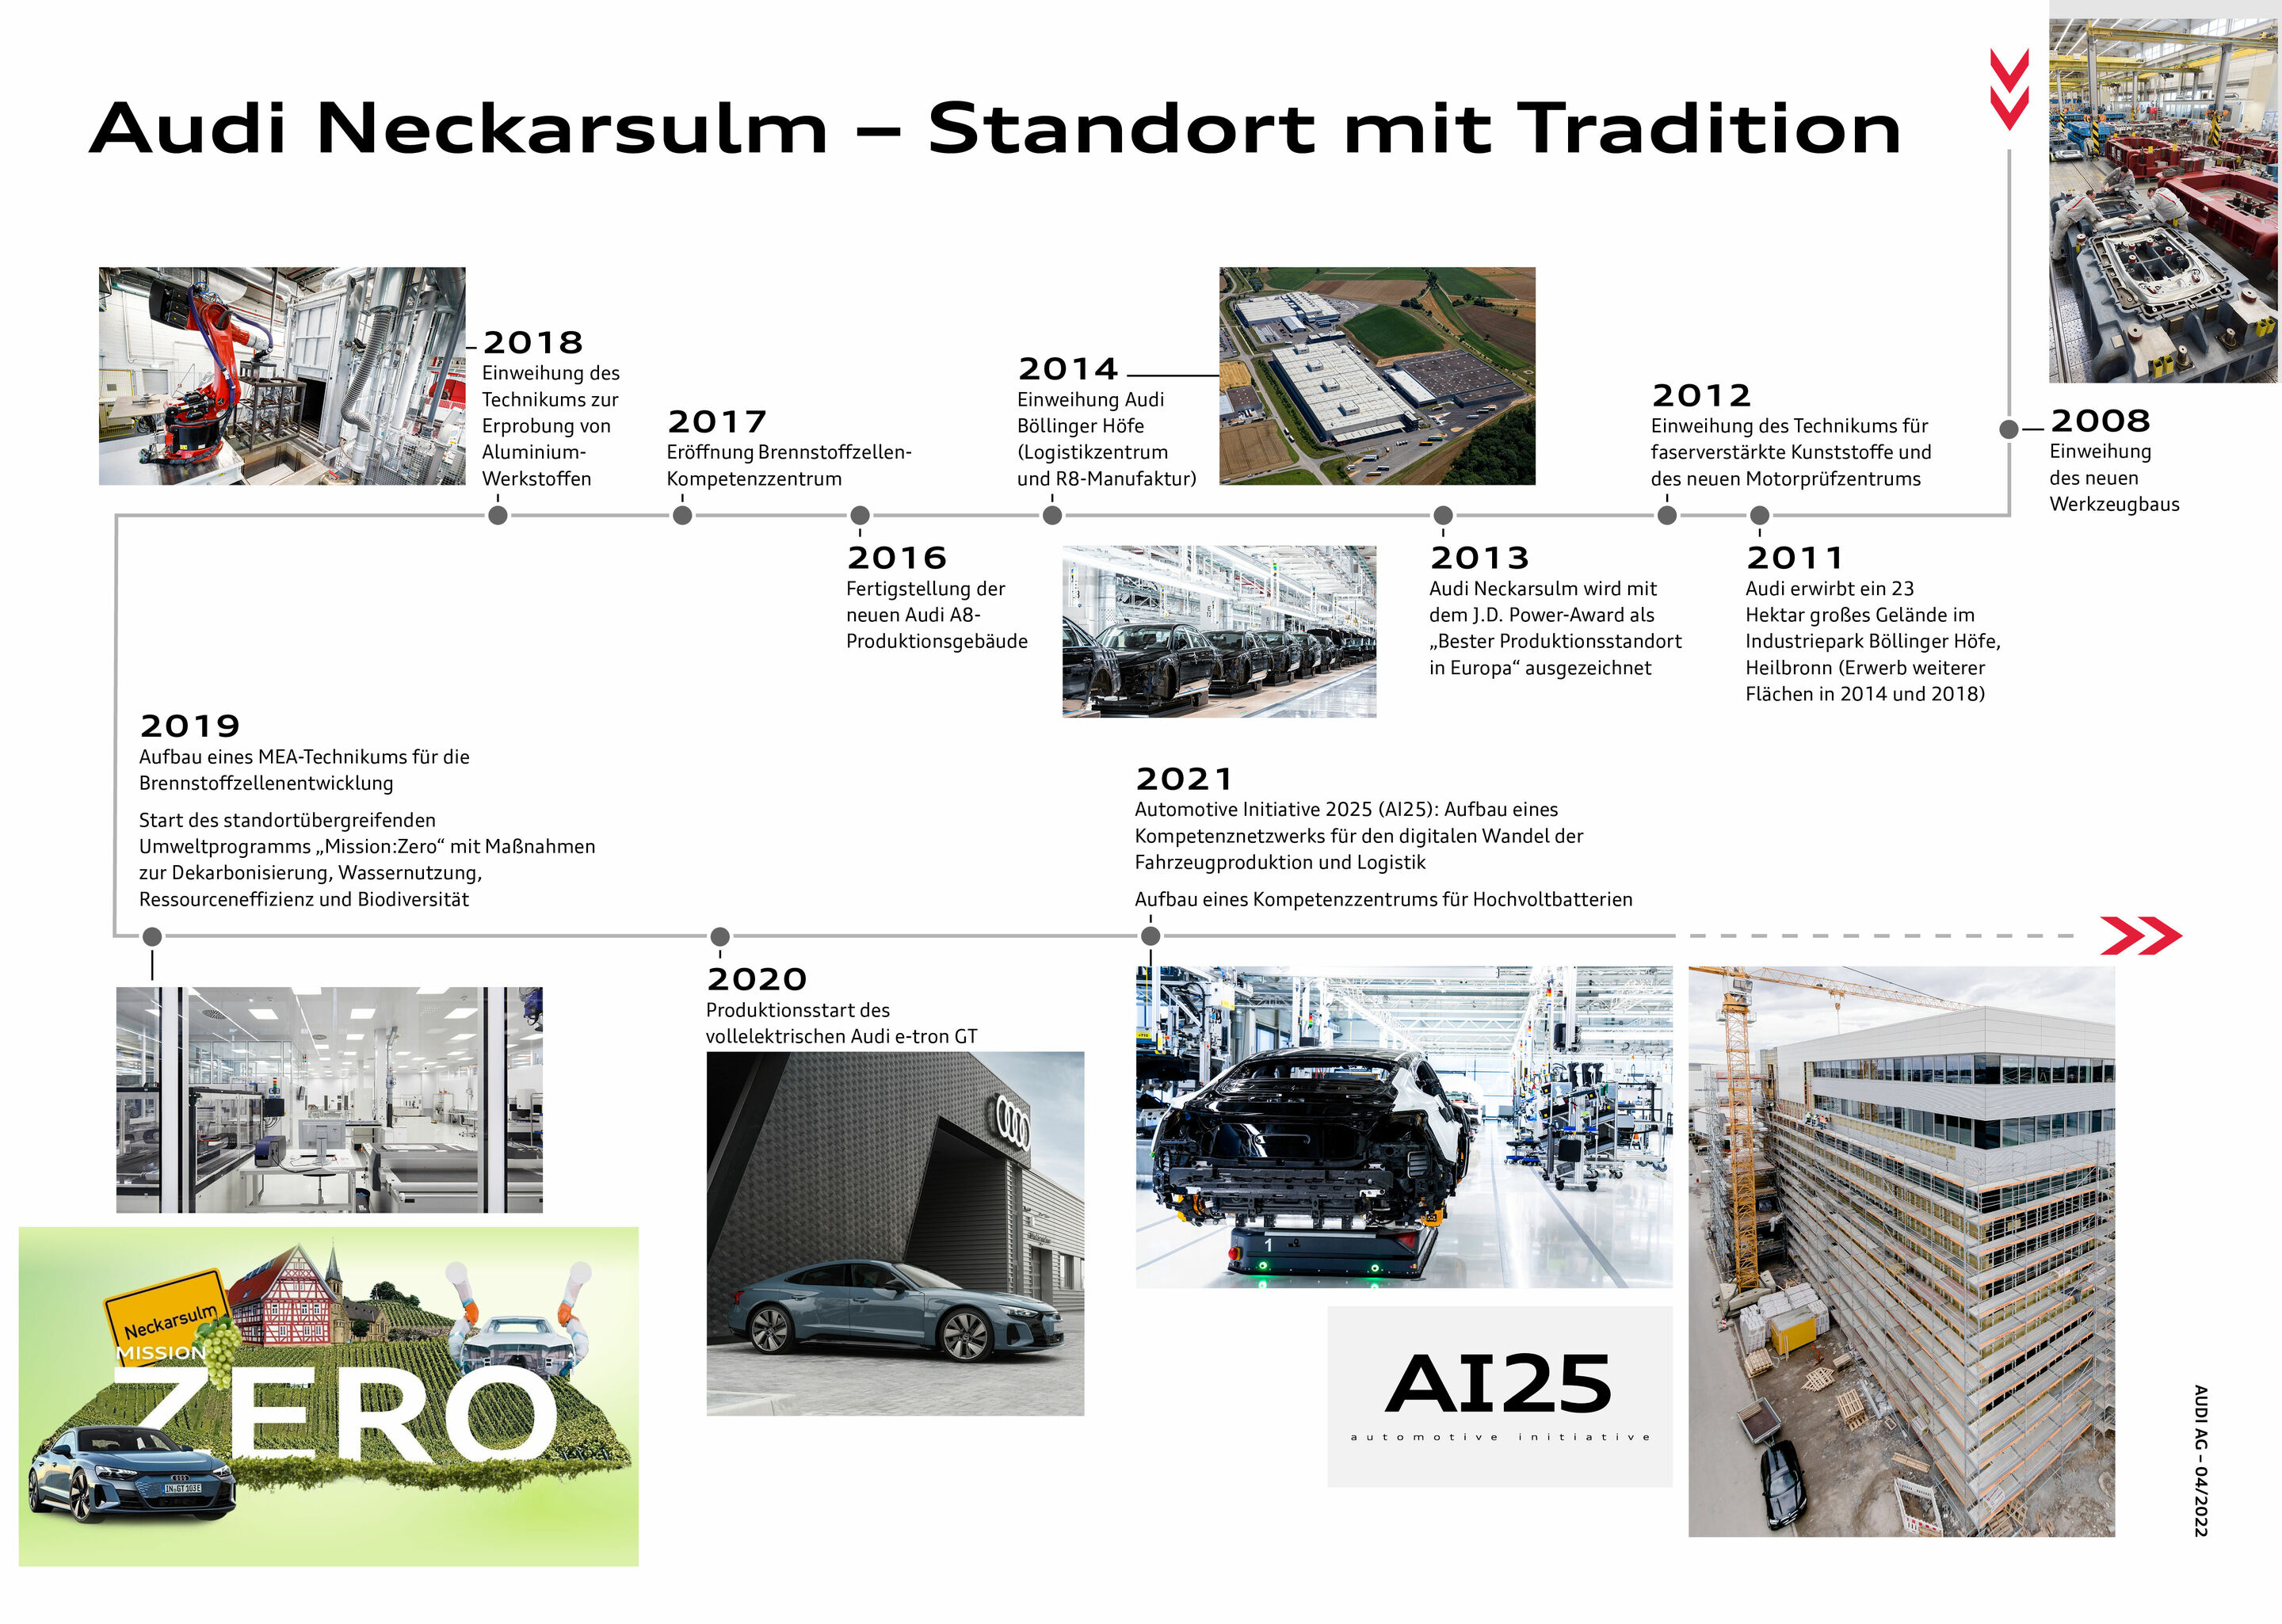 Audi Forum Neckarsulm würdigt Geschichte des Werbeslogans „Vorsprung durch Technik“